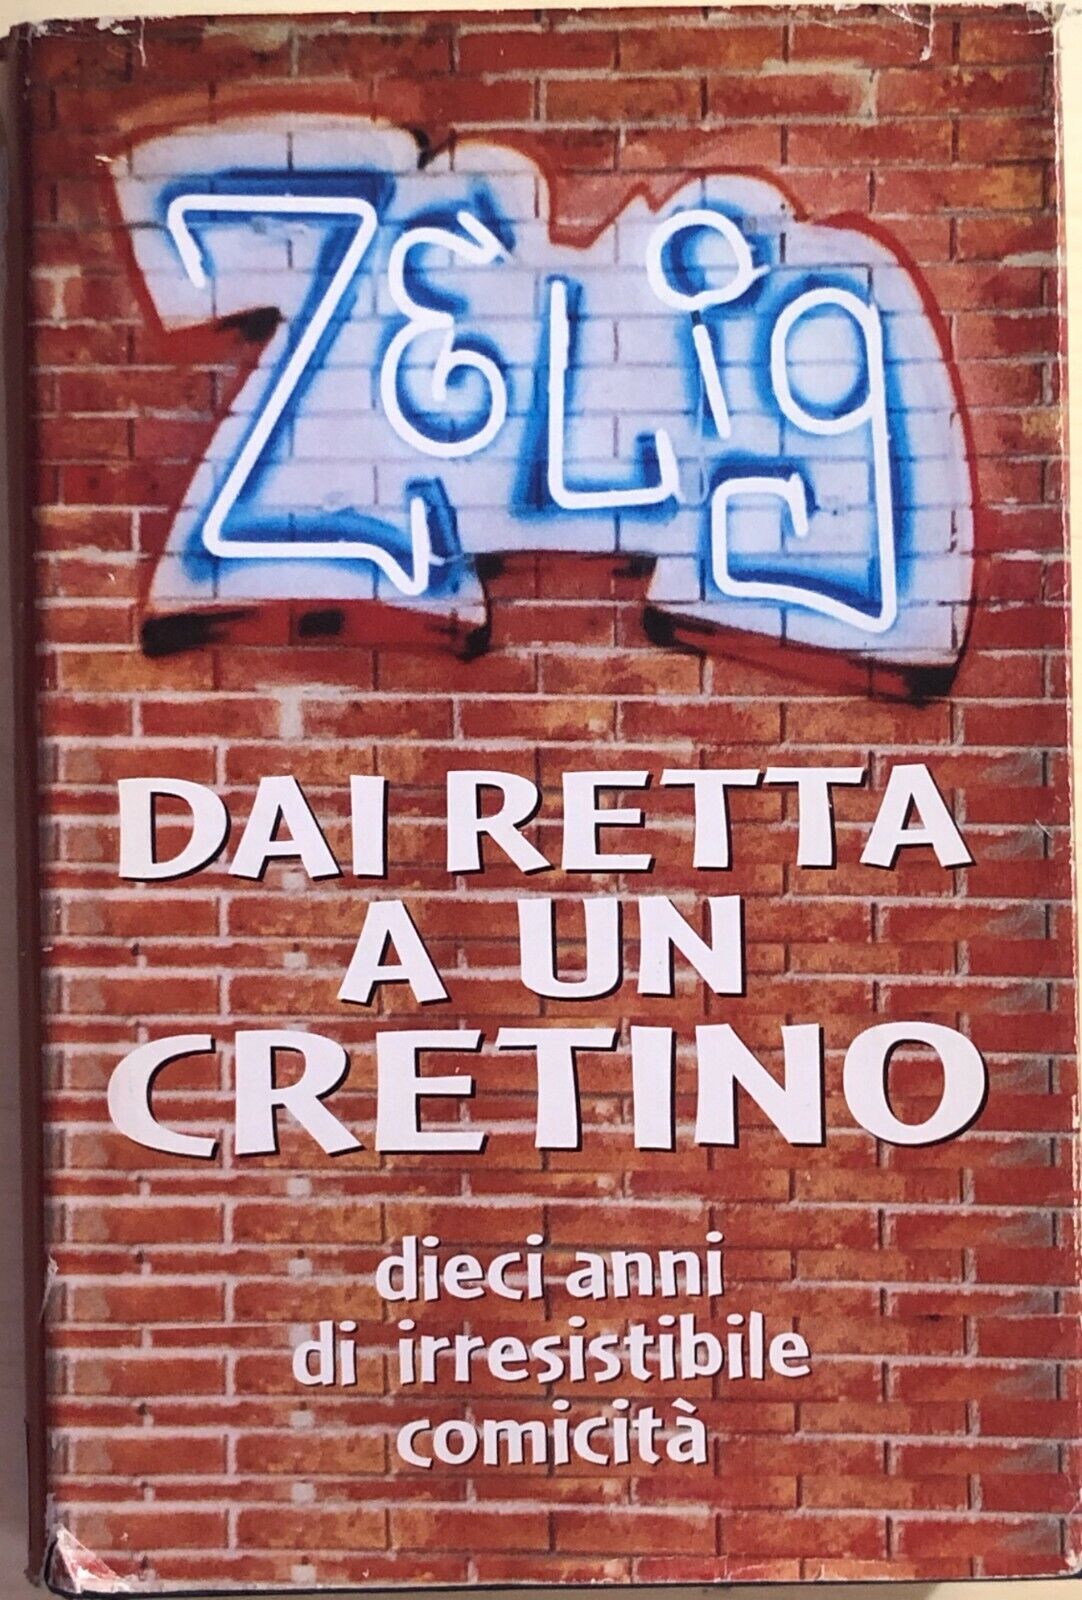 Zelig, dai retta a un cretino di AA.VV., 2008, Edizioni mondolibro